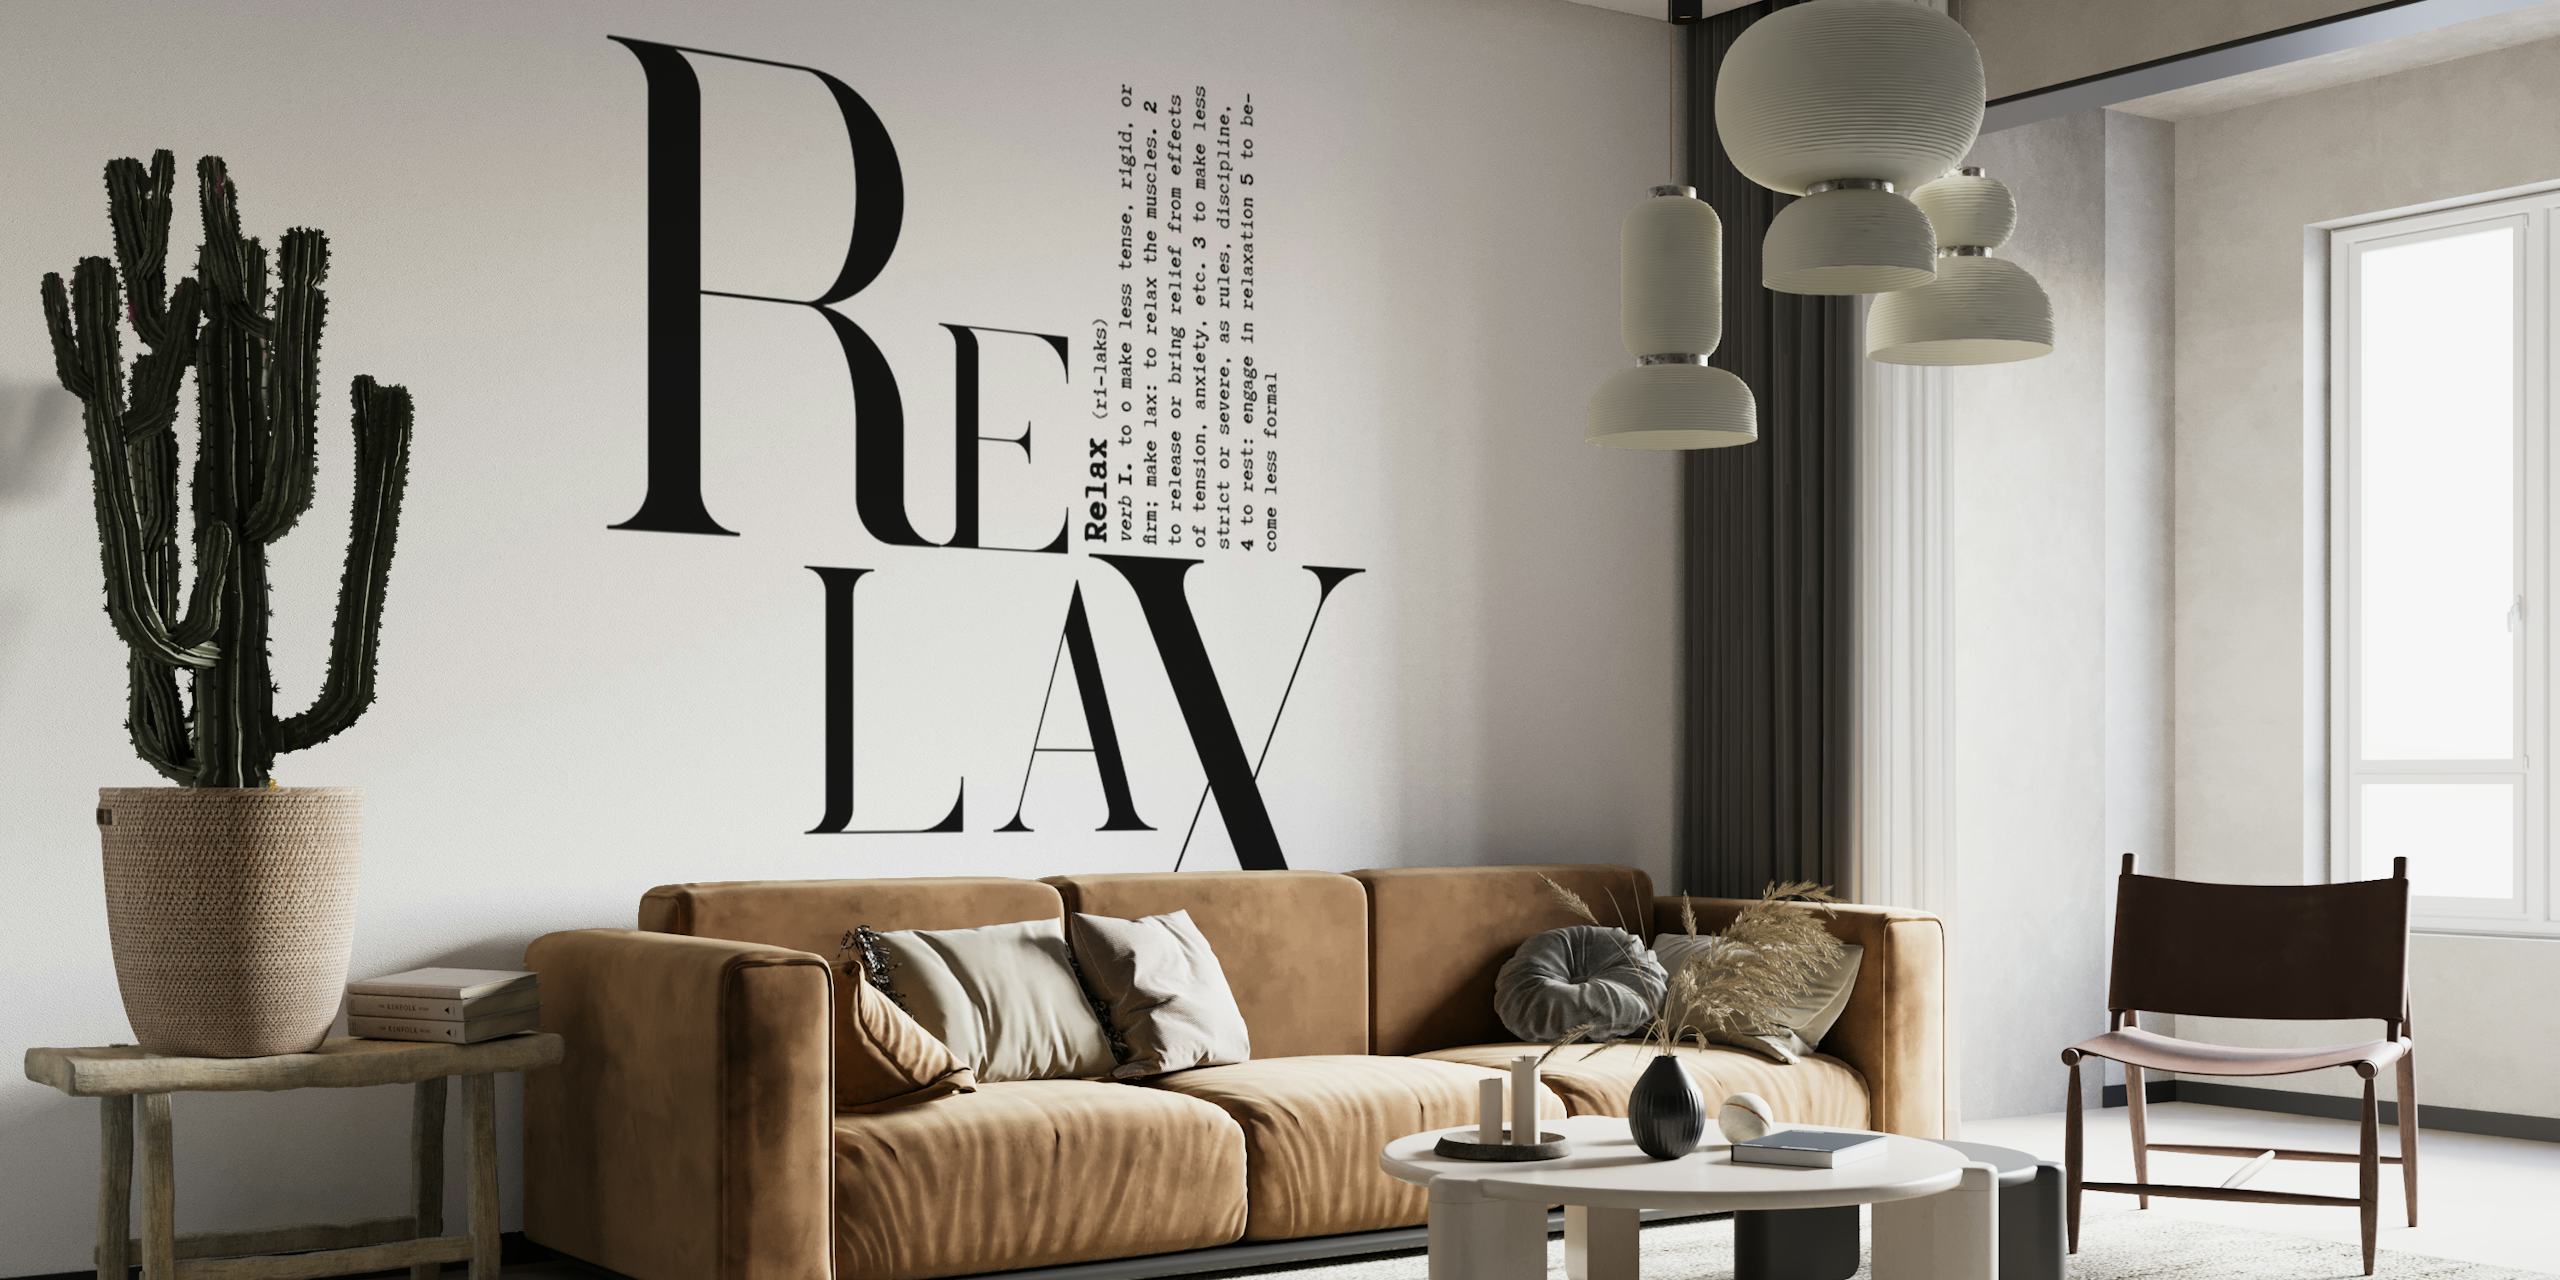 Sort/hvid typografisk vægmaleri med ordet 'RELAX' i en kreativ skrifttype